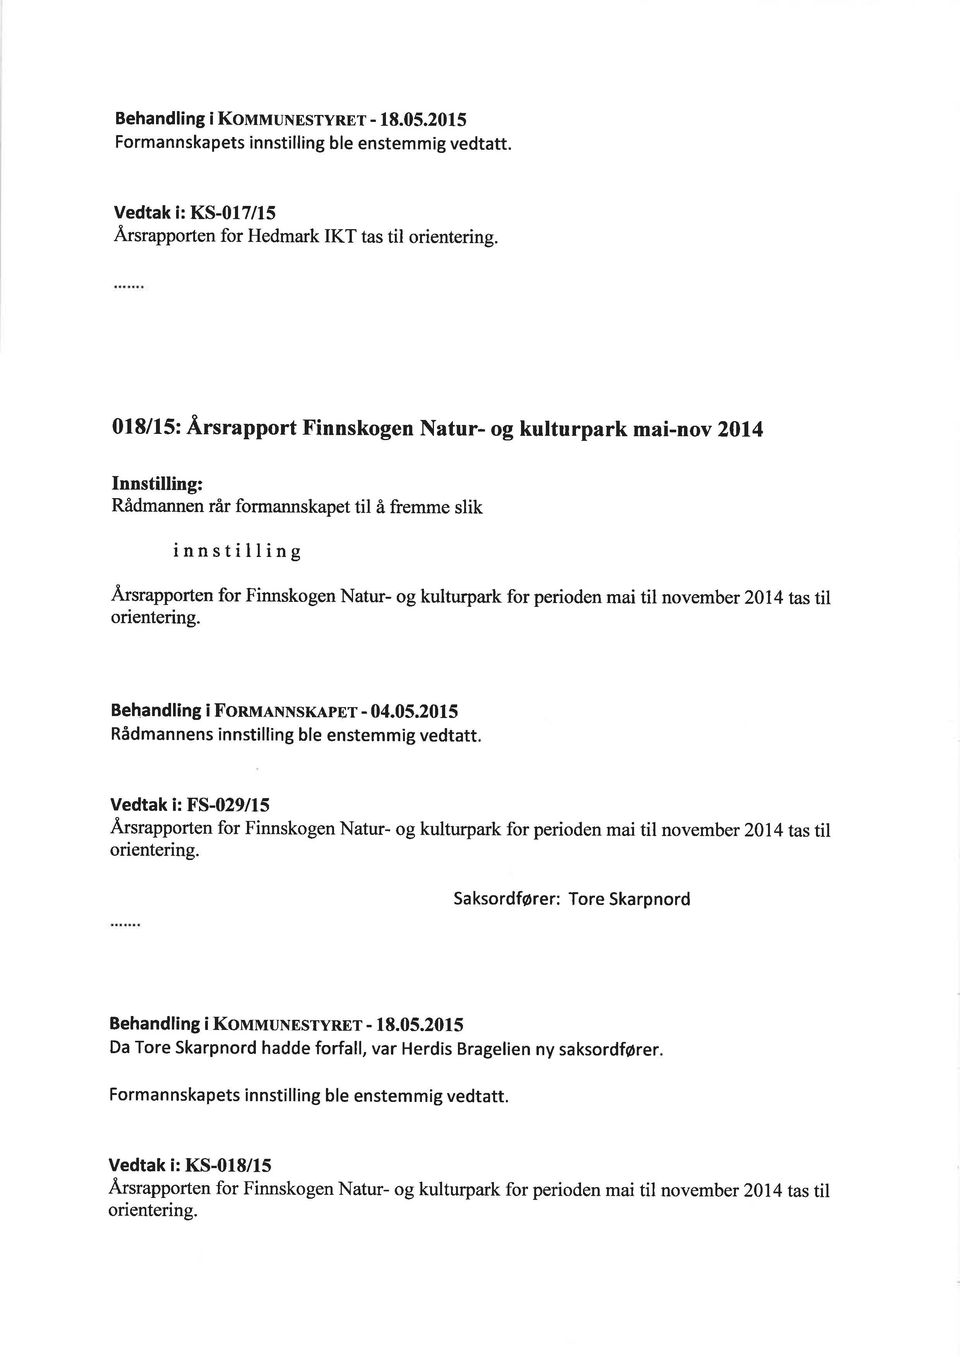 arsrapporten for Finnskogen Natur- og kulturpark for perioden mai til november 2014 tas til orientering. Behandling i FonulxxsKApnr - 04.05.